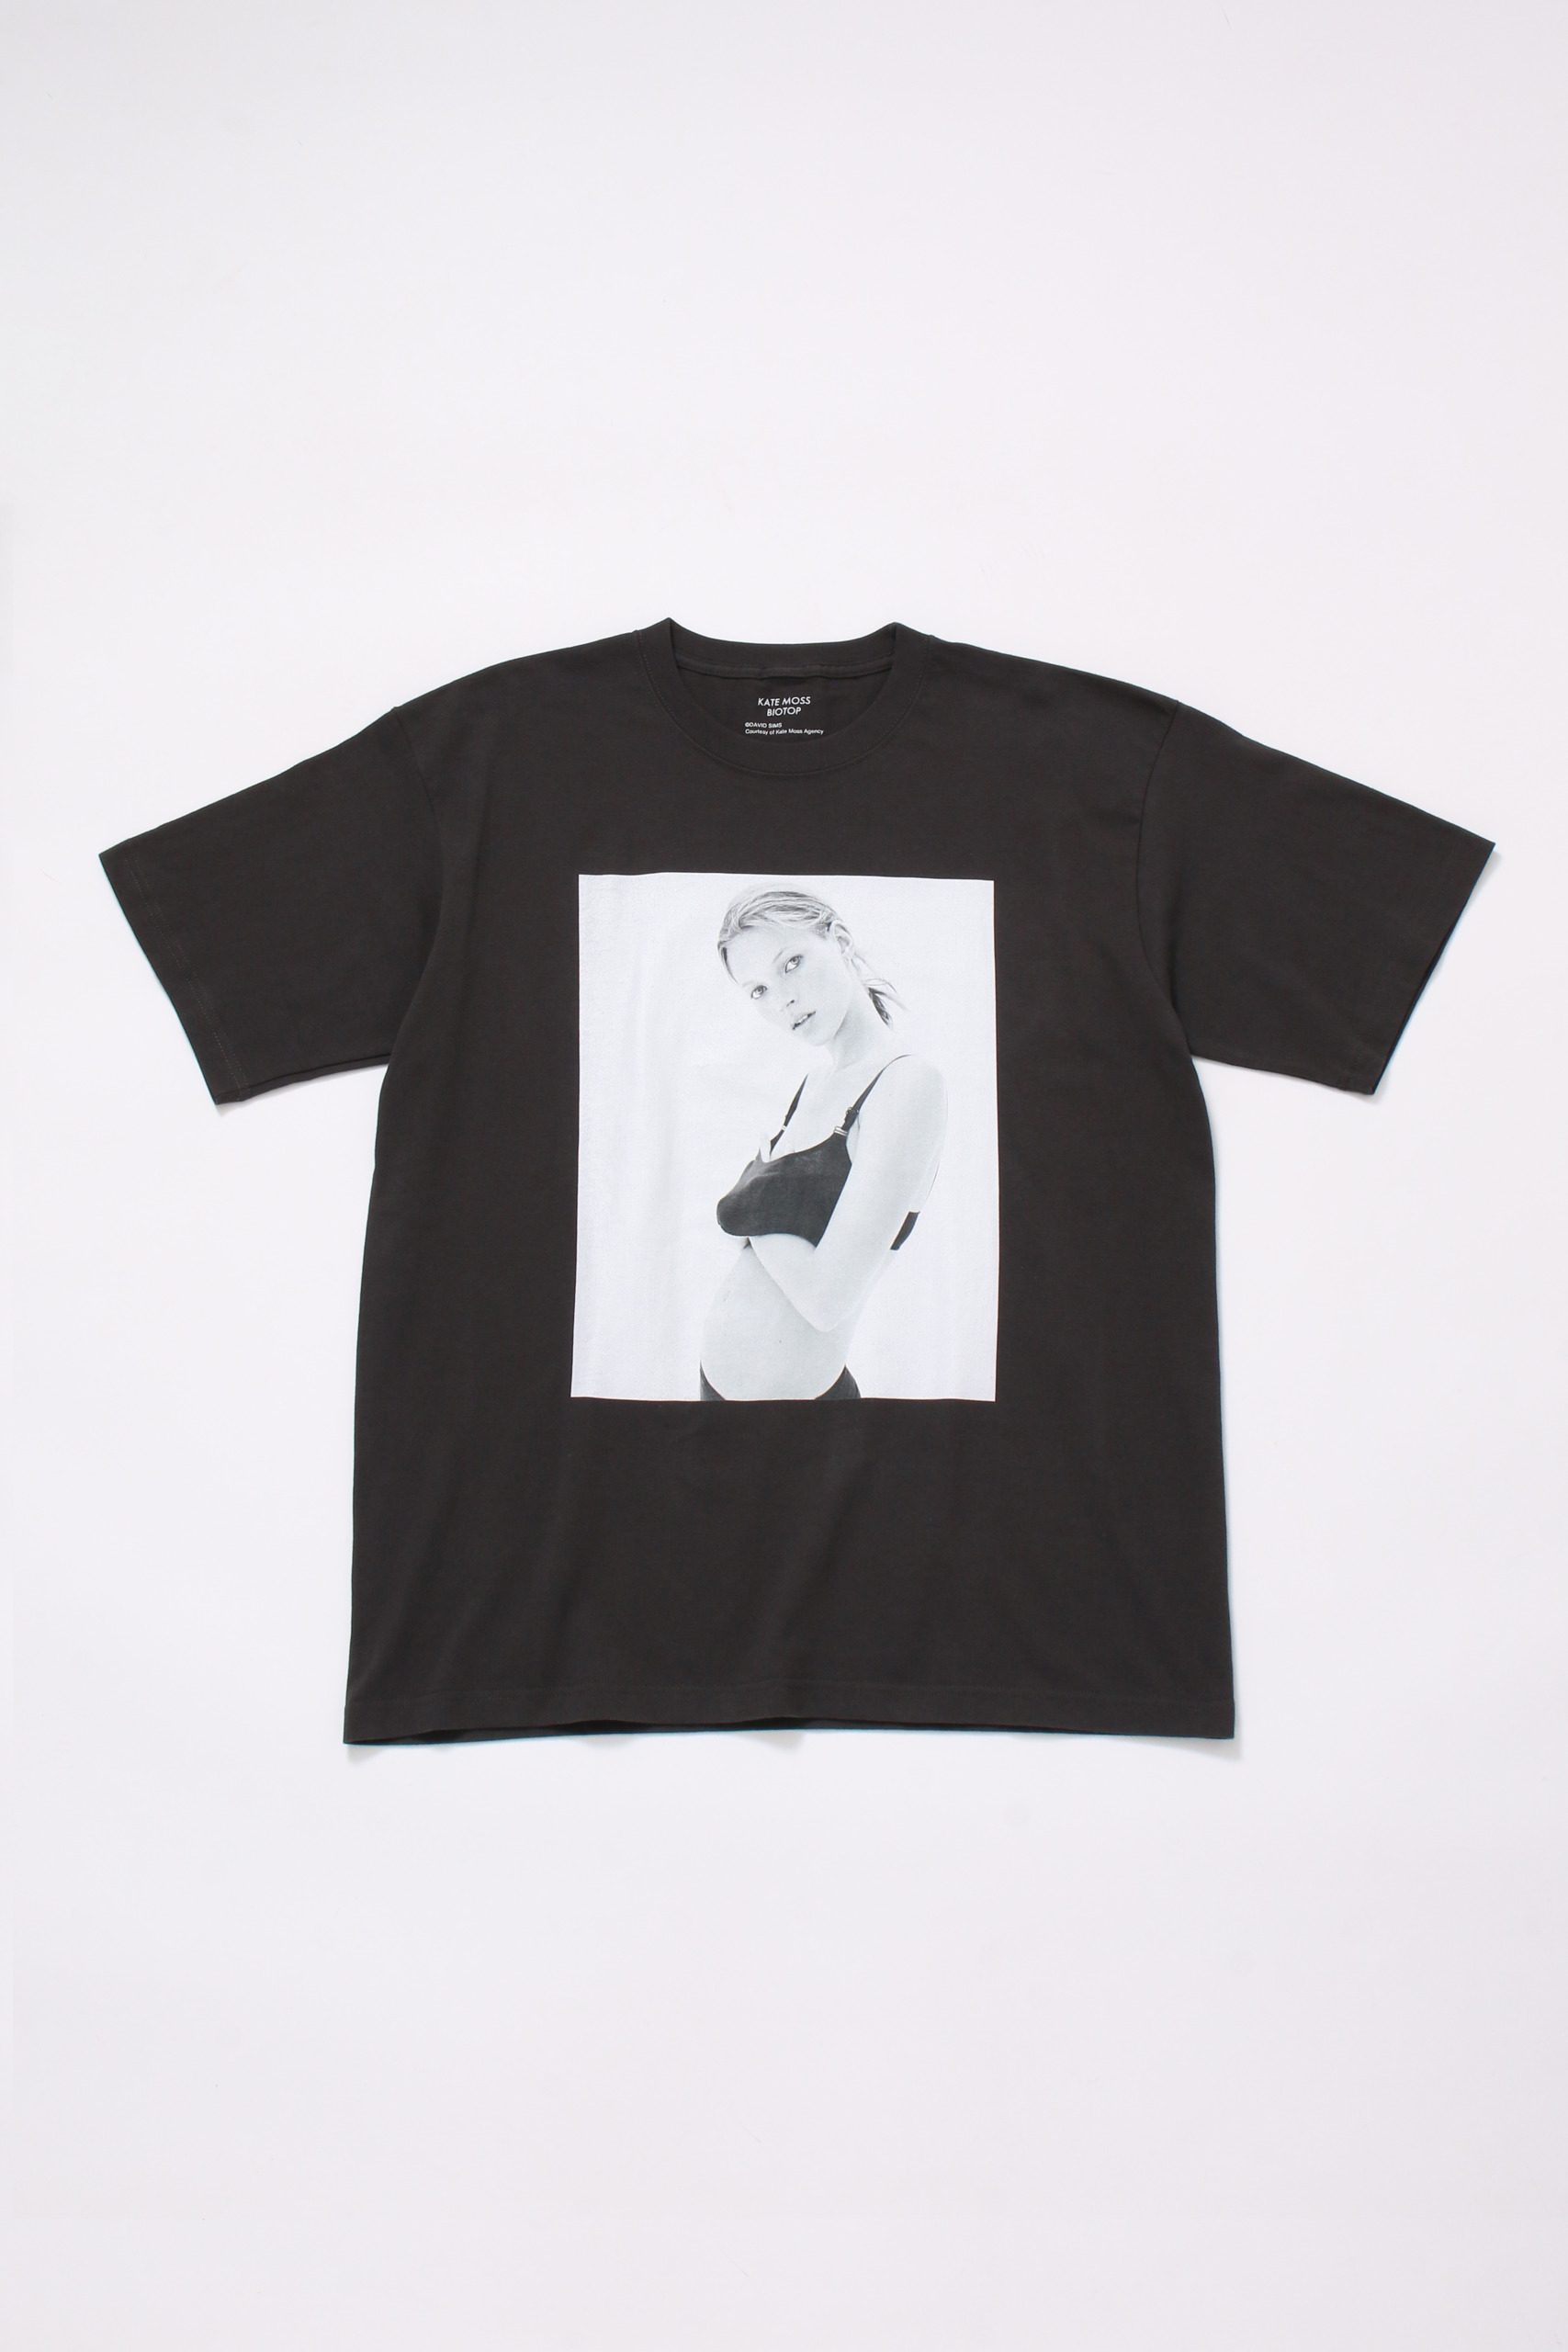 【Lサイズ】 BIOTOP Kate Moss David Sims Tシャツ使用状況新品未使用